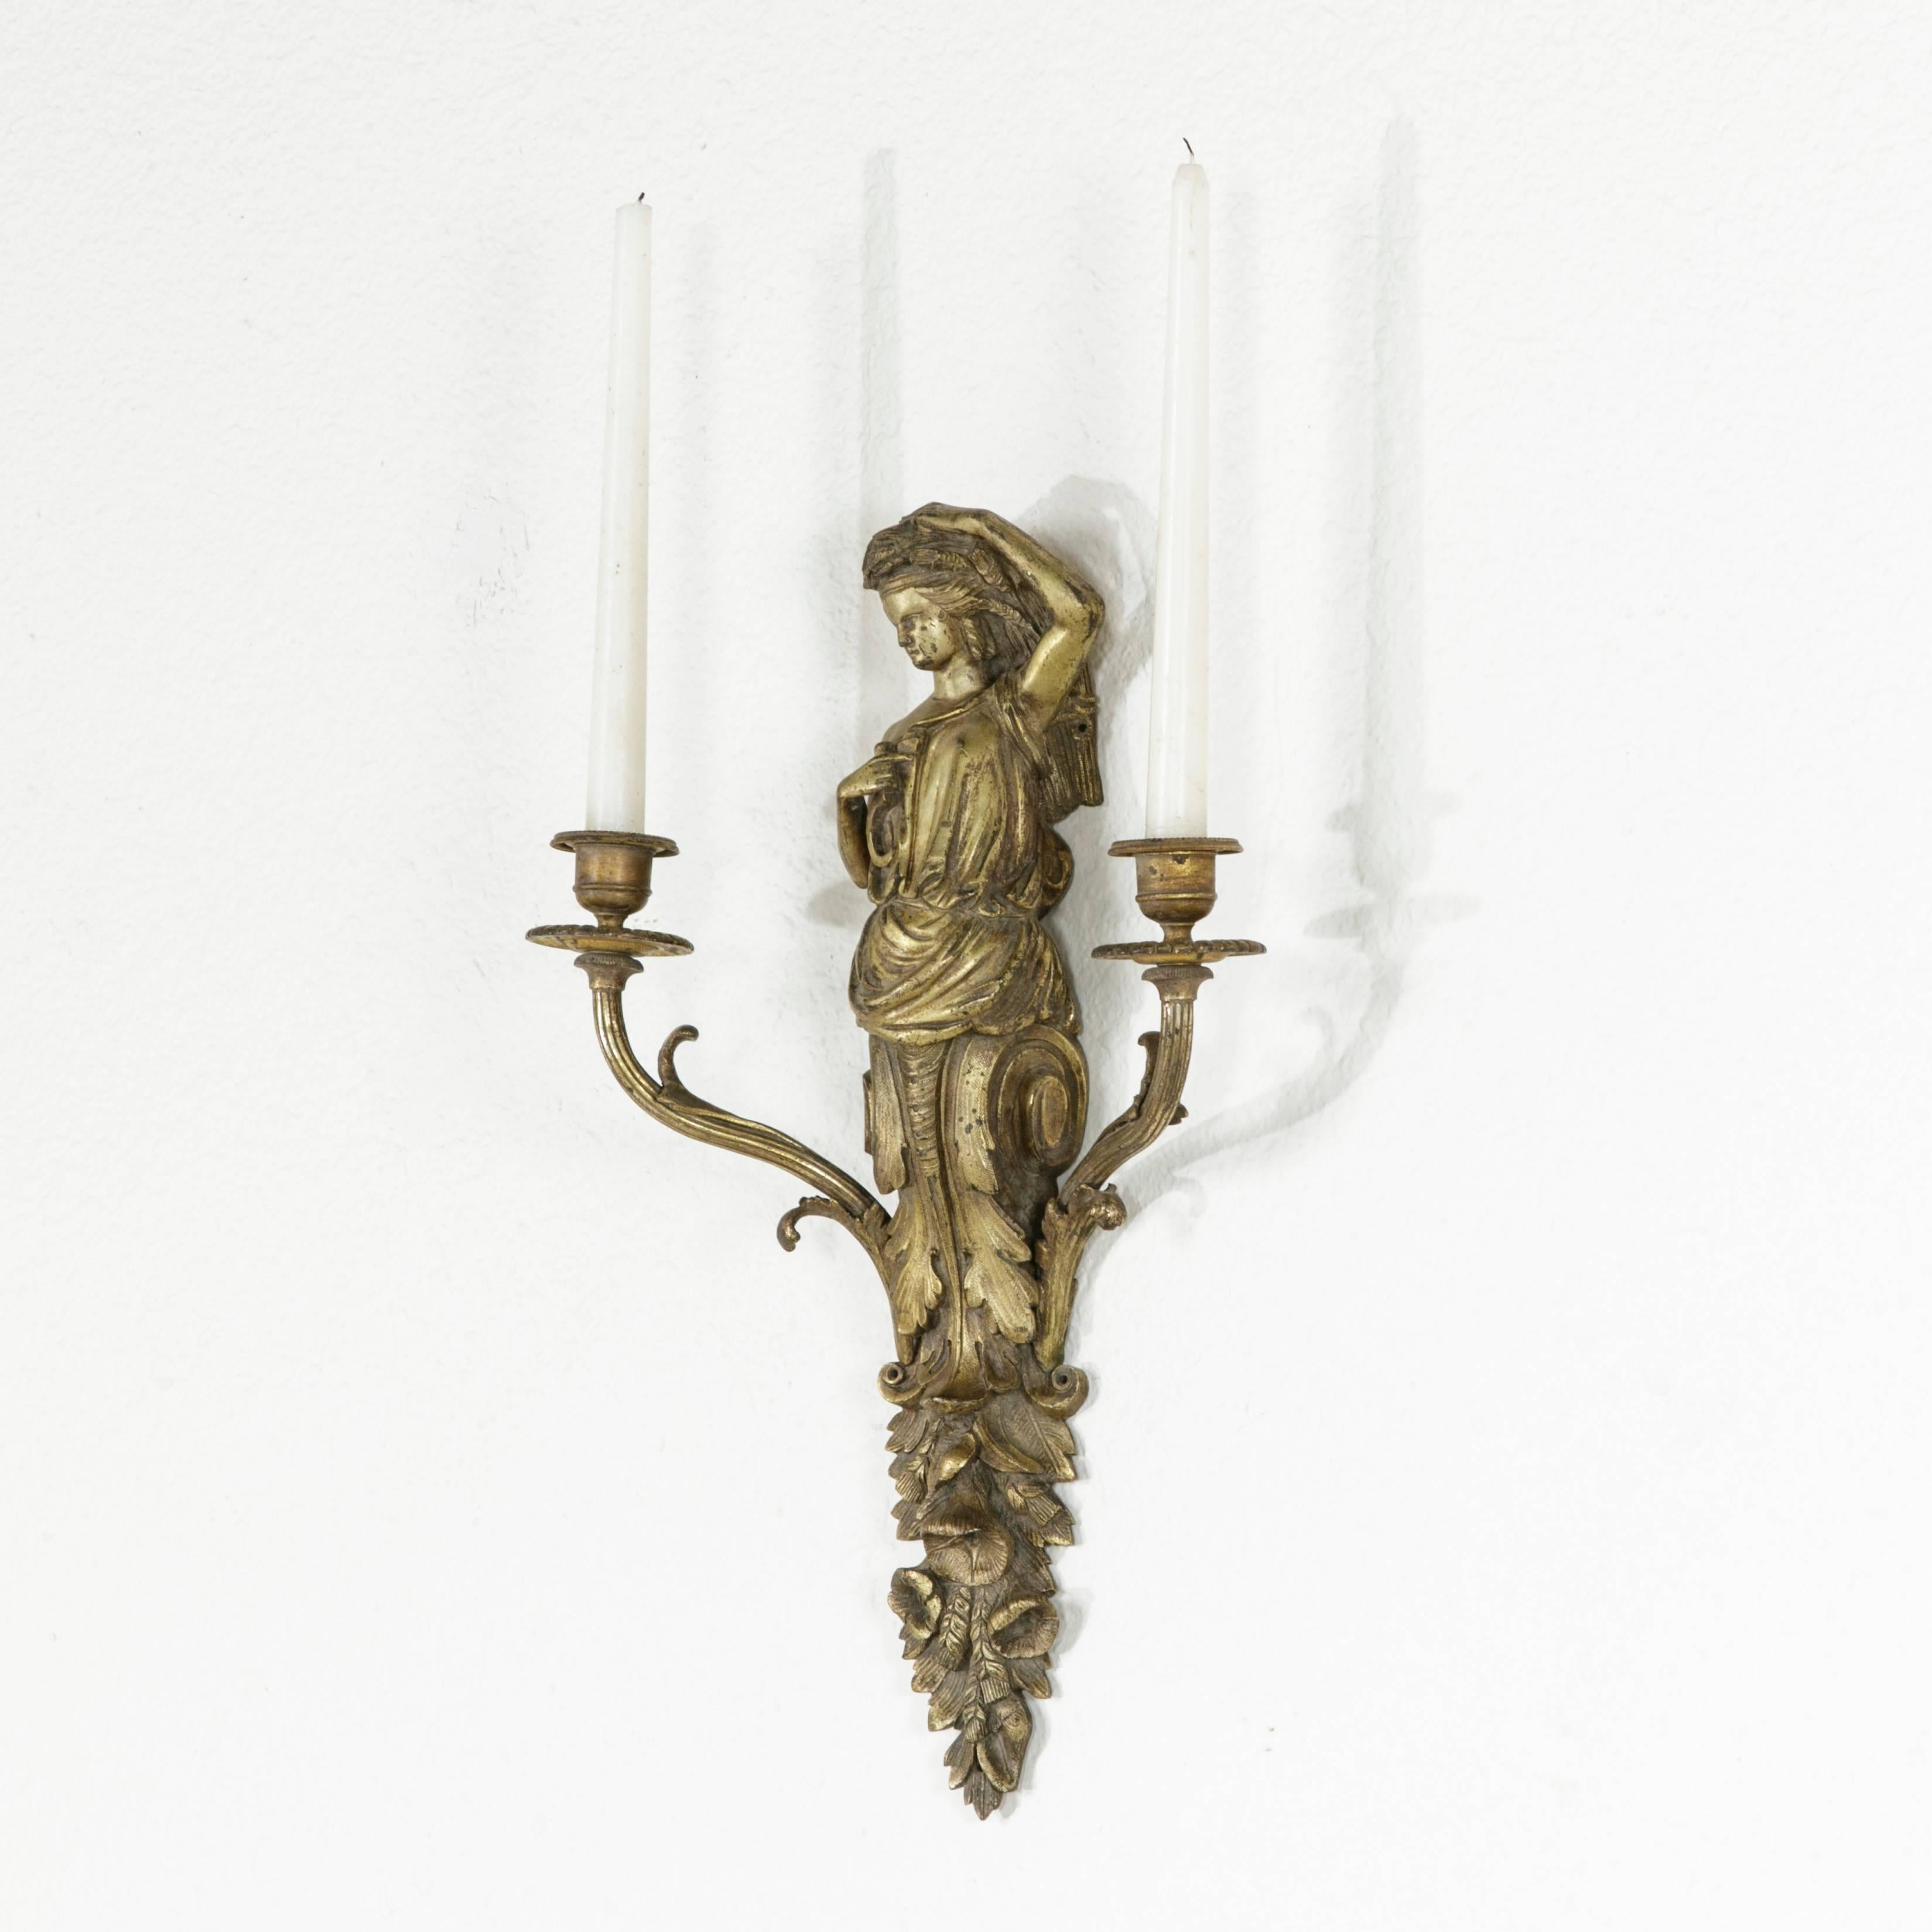 Dieser Bronzewandleuchter aus der Zeit Napoleons III. zeigt eine klassische Frauenfigur, die auf einem geschwungenen Akanthus und Blumen steht. Von der floralen Basis gehen zwei Kerzenarme aus. Die ungewöhnliche Größe dieses Stücks in Verbindung mit